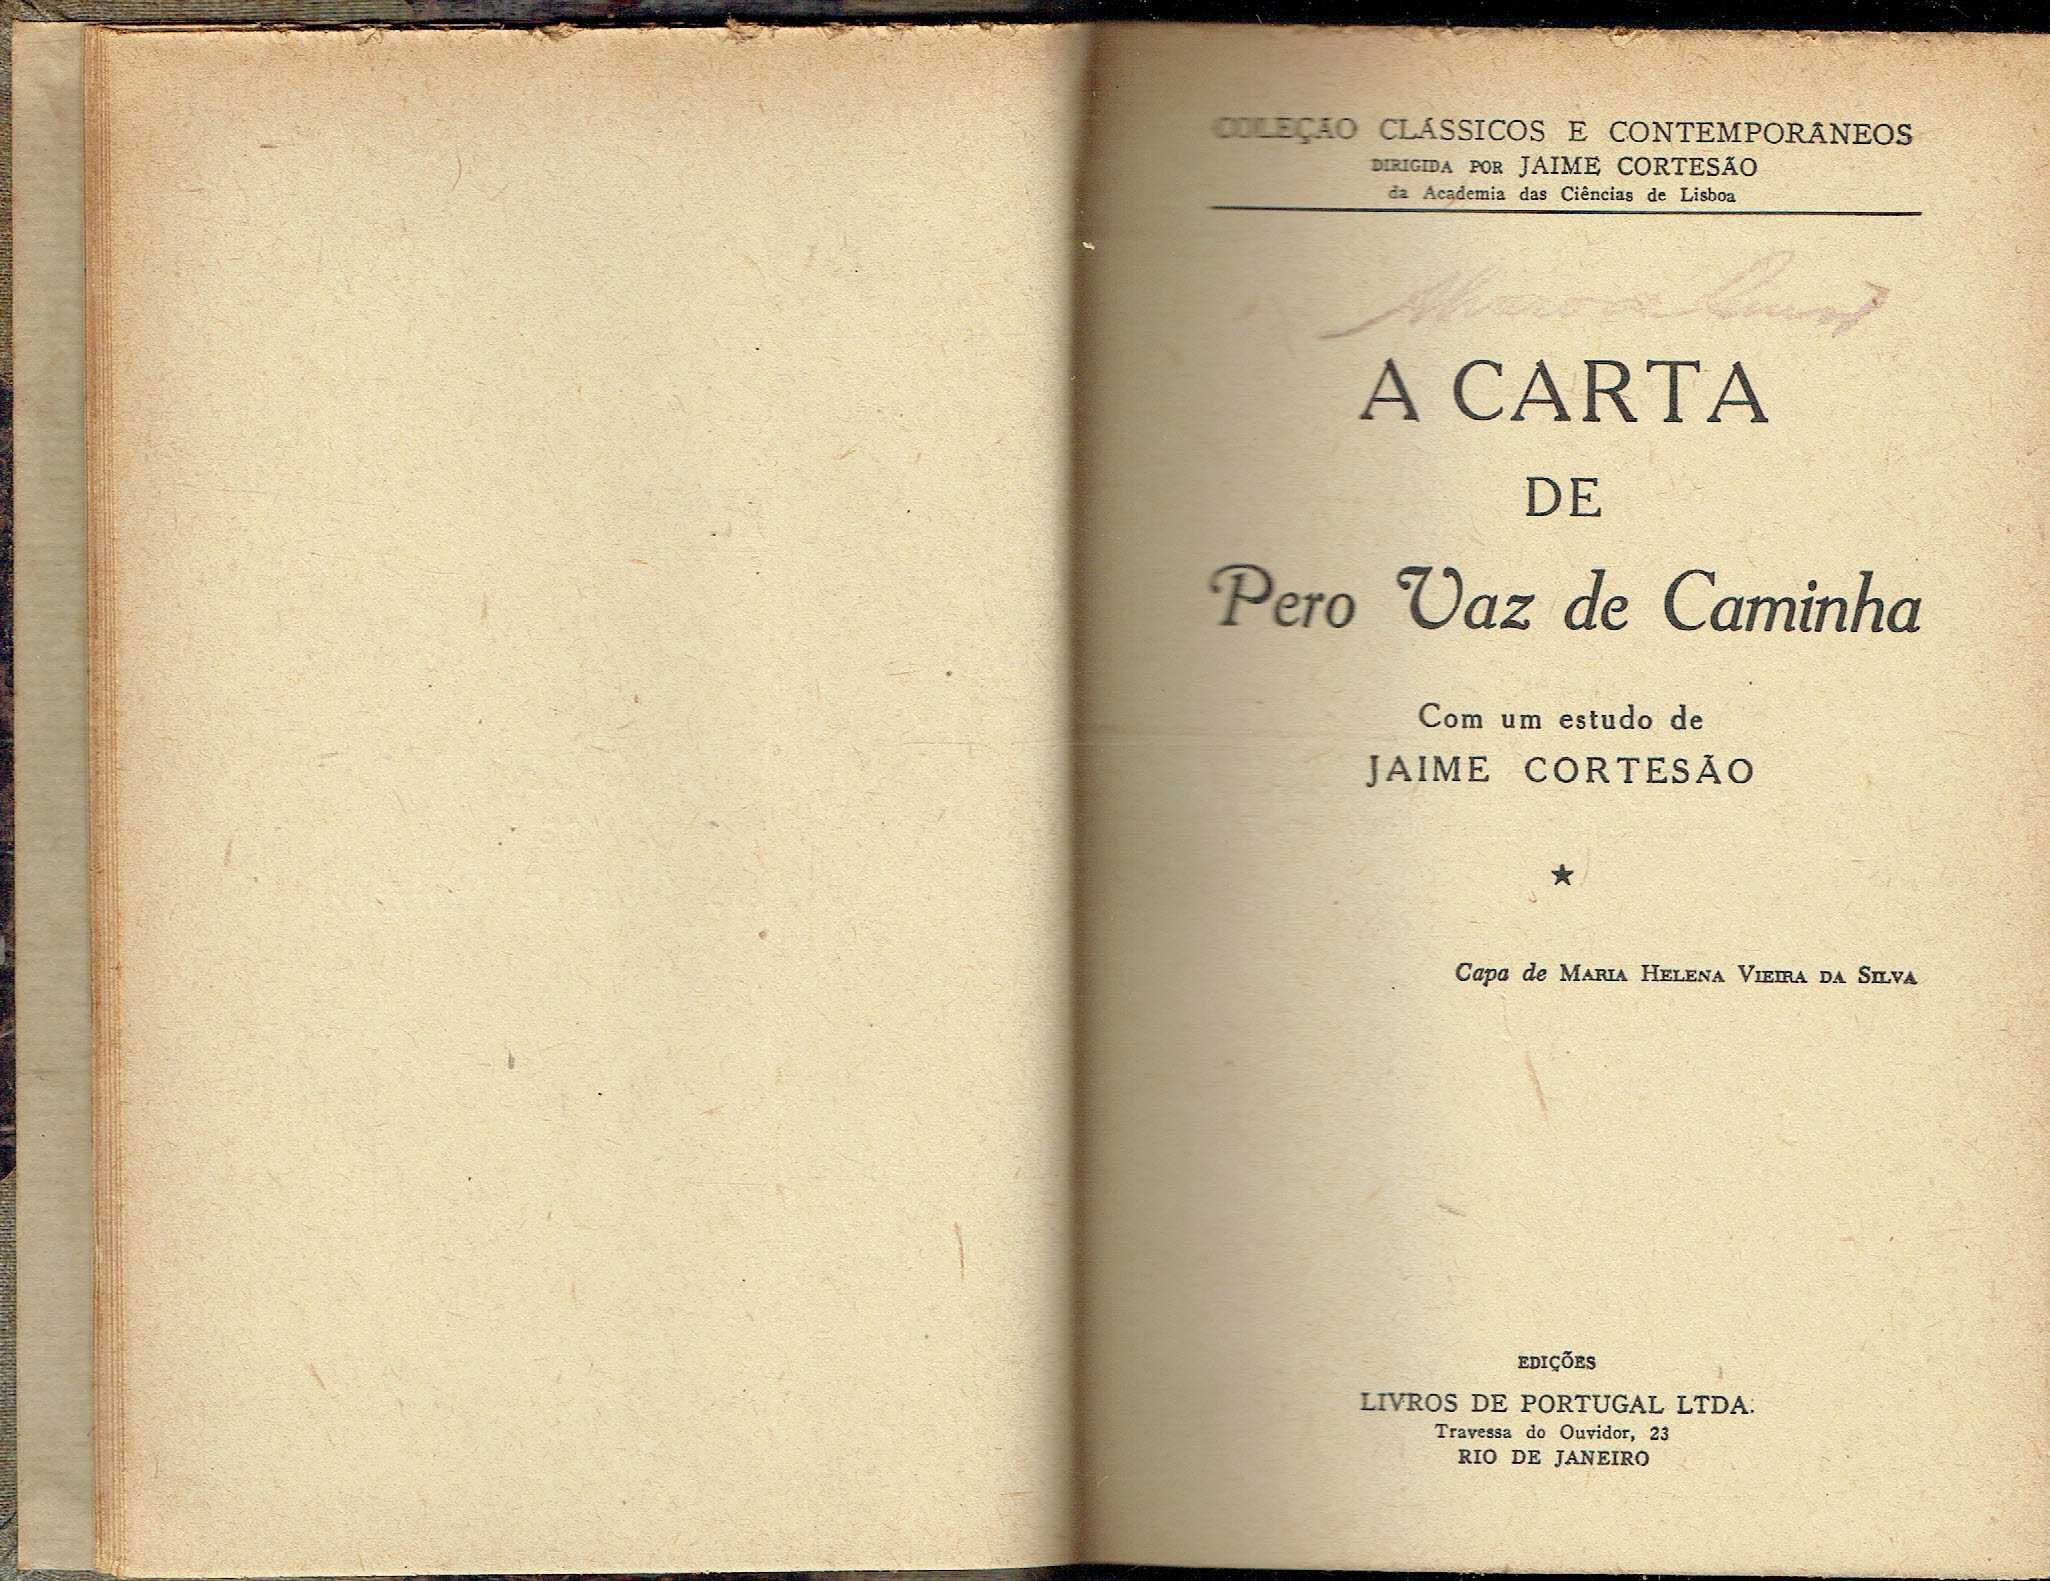 3808
A carta de Pero Vaz de Caminha  
com um estudo de Jaime Cortesão